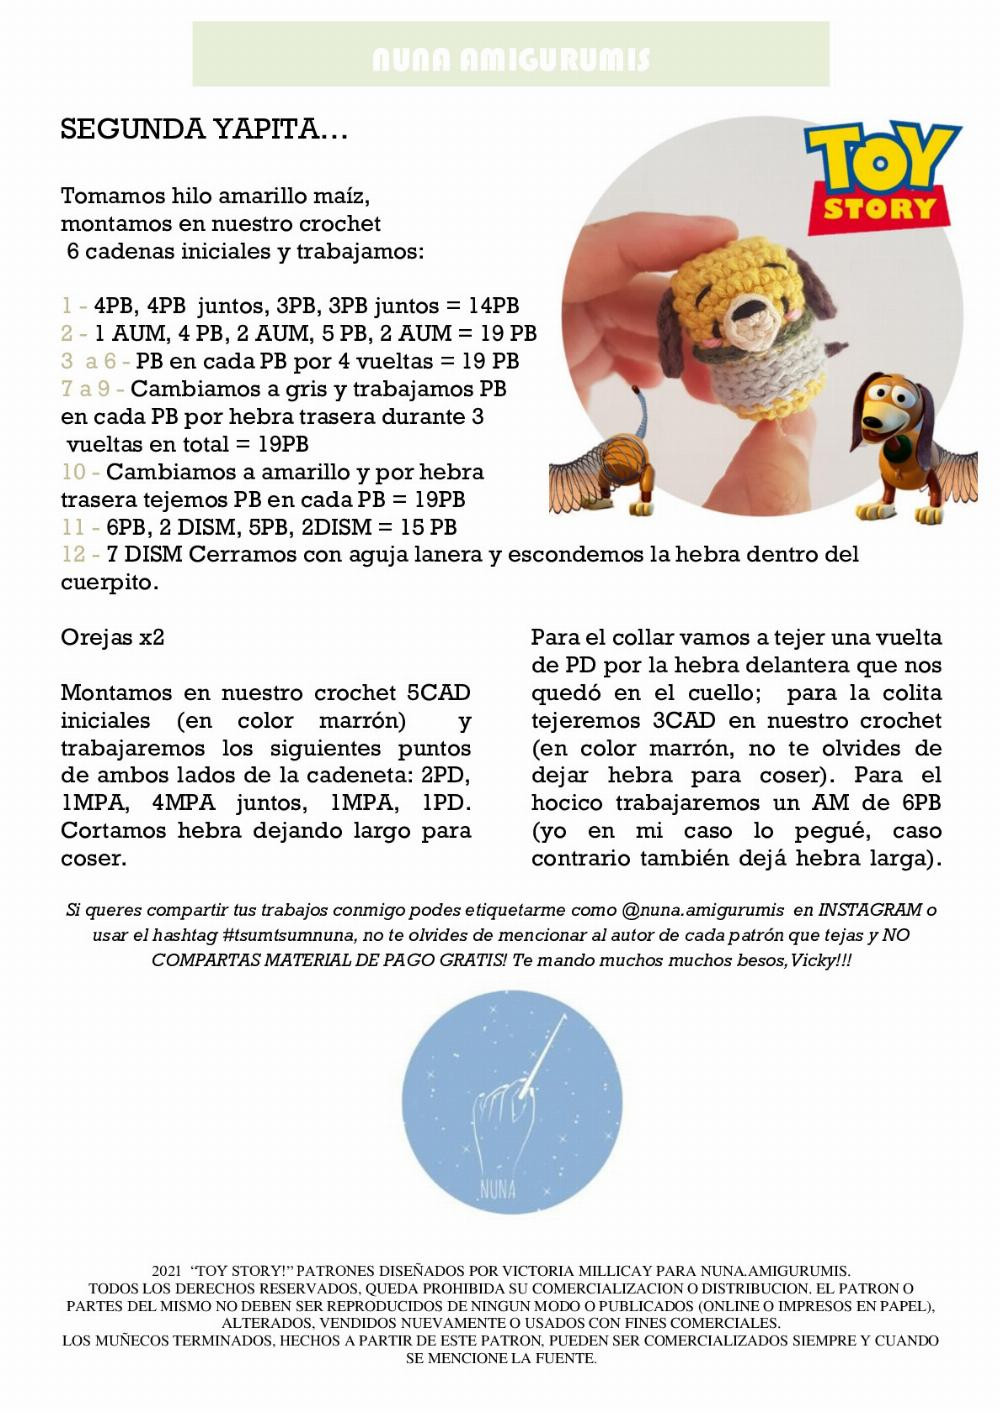 Tutorial de crochet de juguetes de Toy Story para principiantes y avanzados  "gancho", "principiante", "Woody", "Buzz Lightyear" , "Jessie".